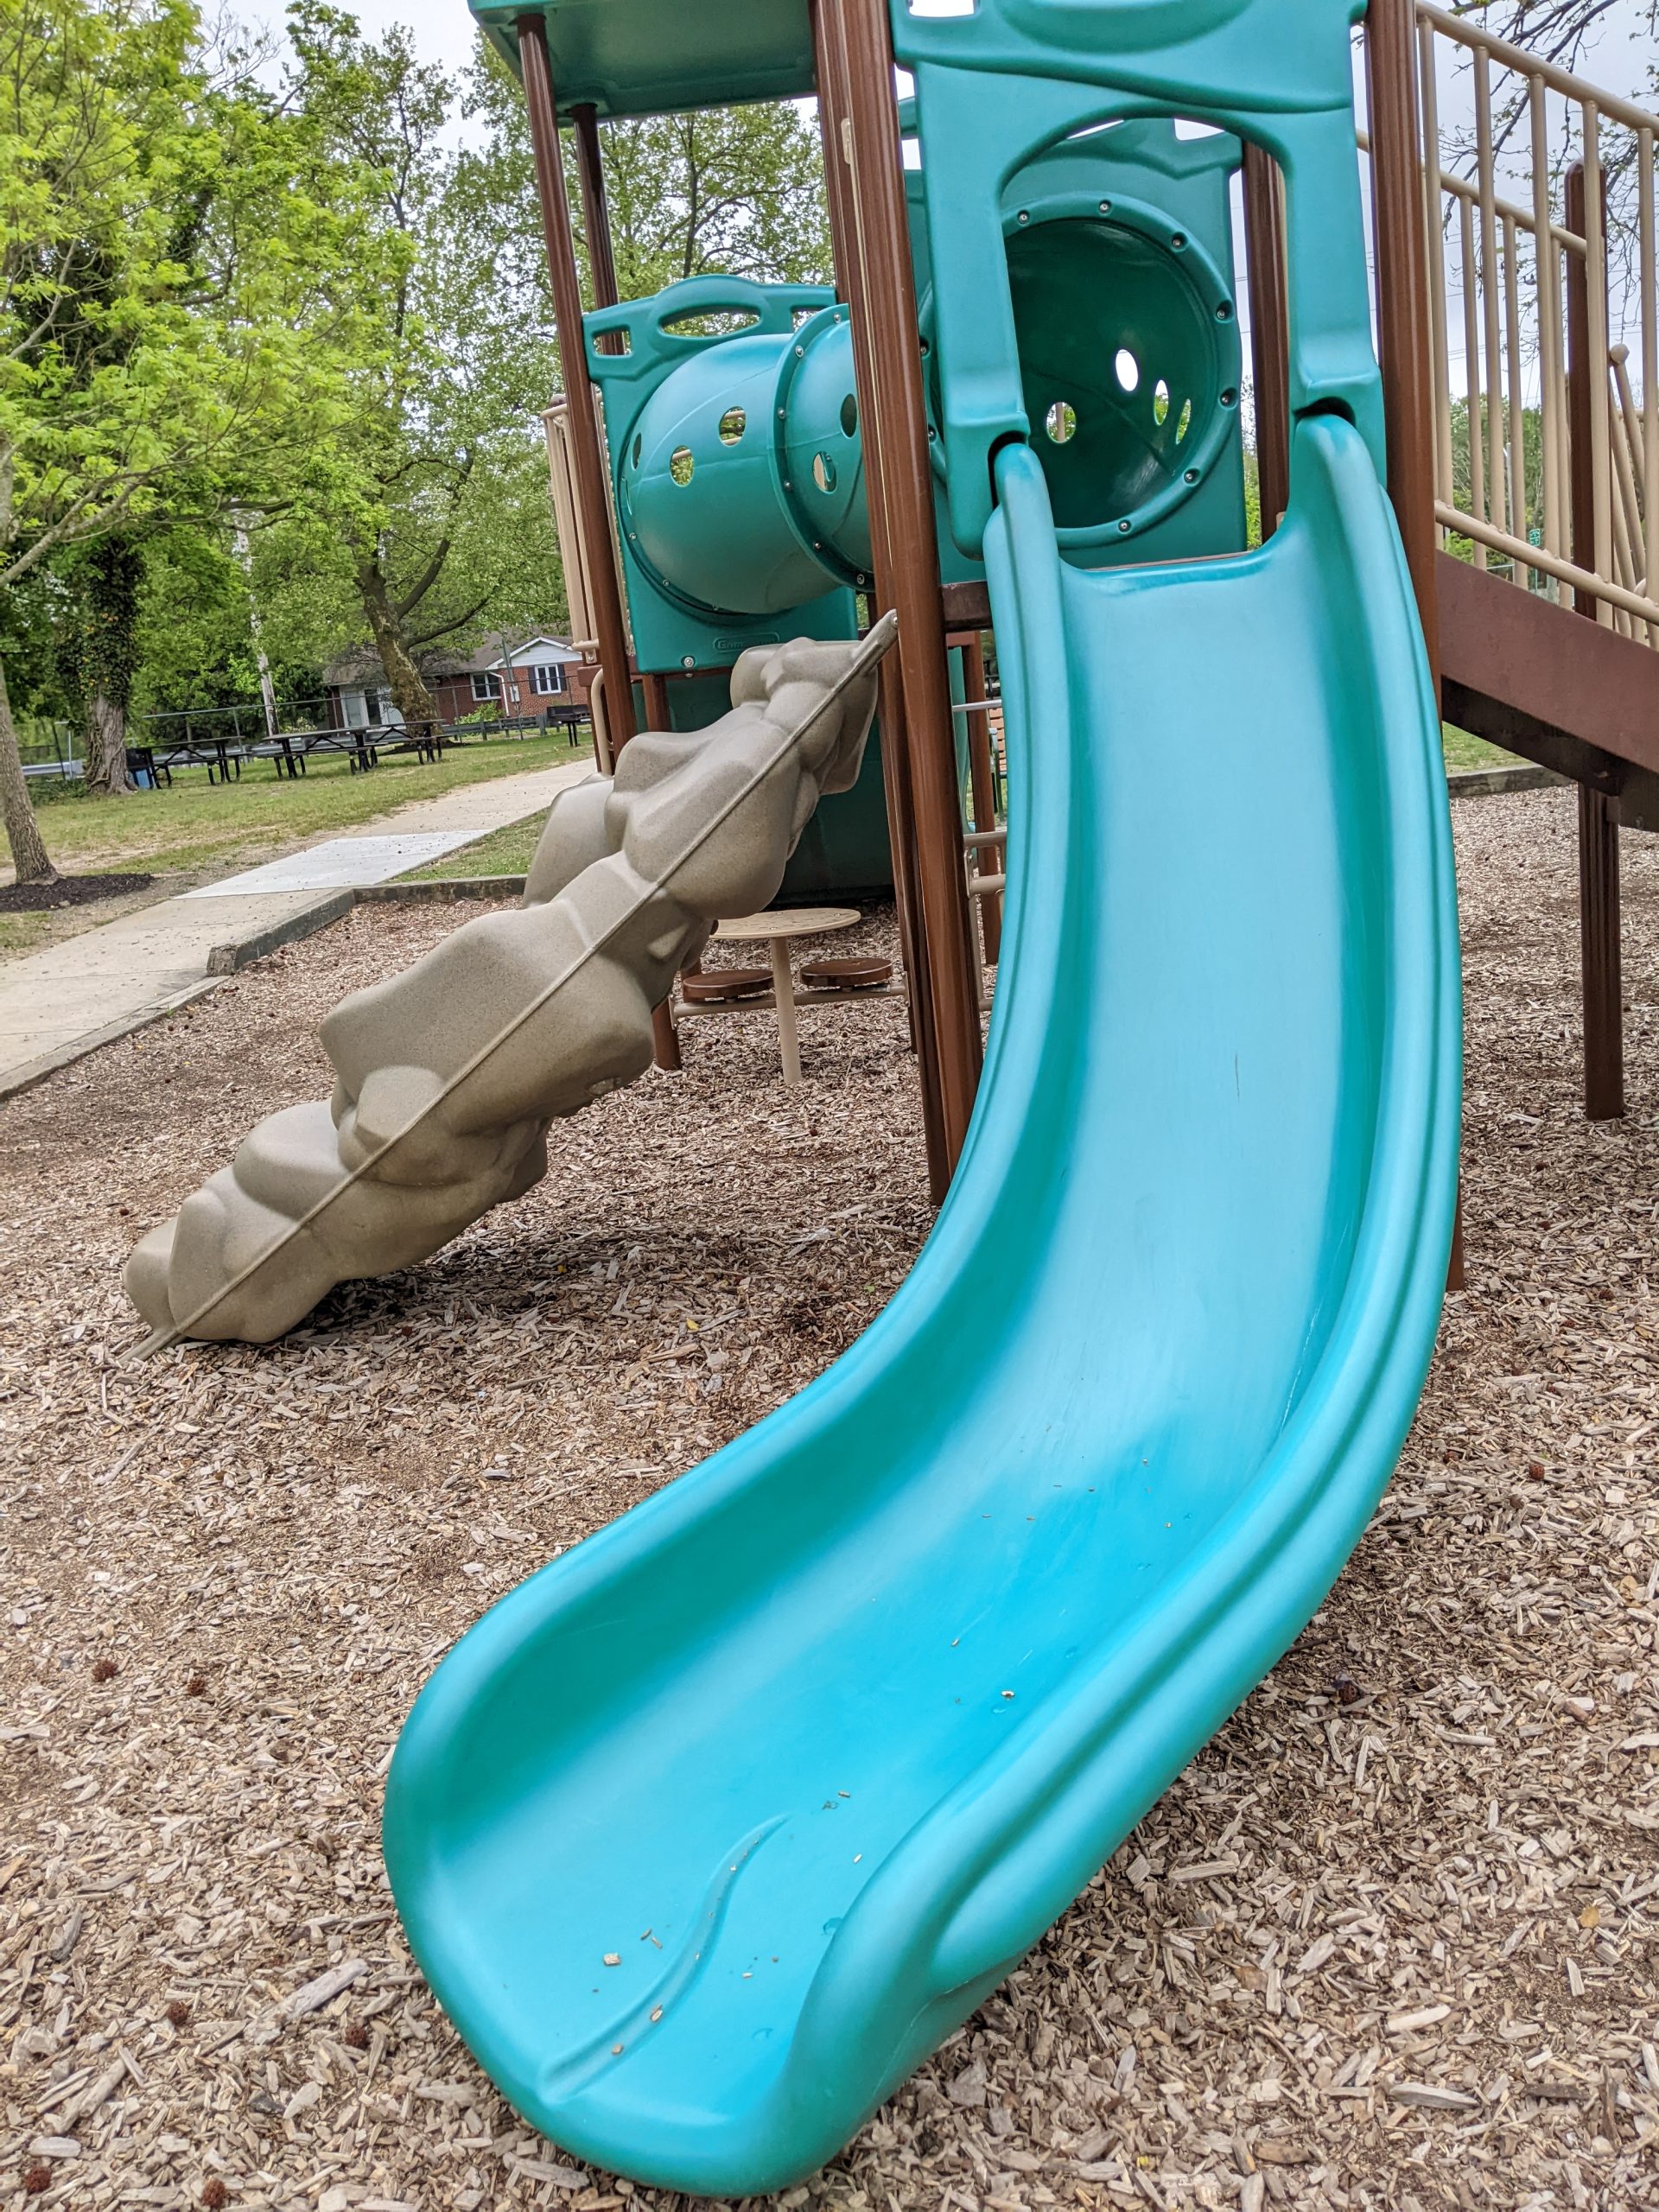 Scotland Run Park Playground in Clayton NJ Slide2